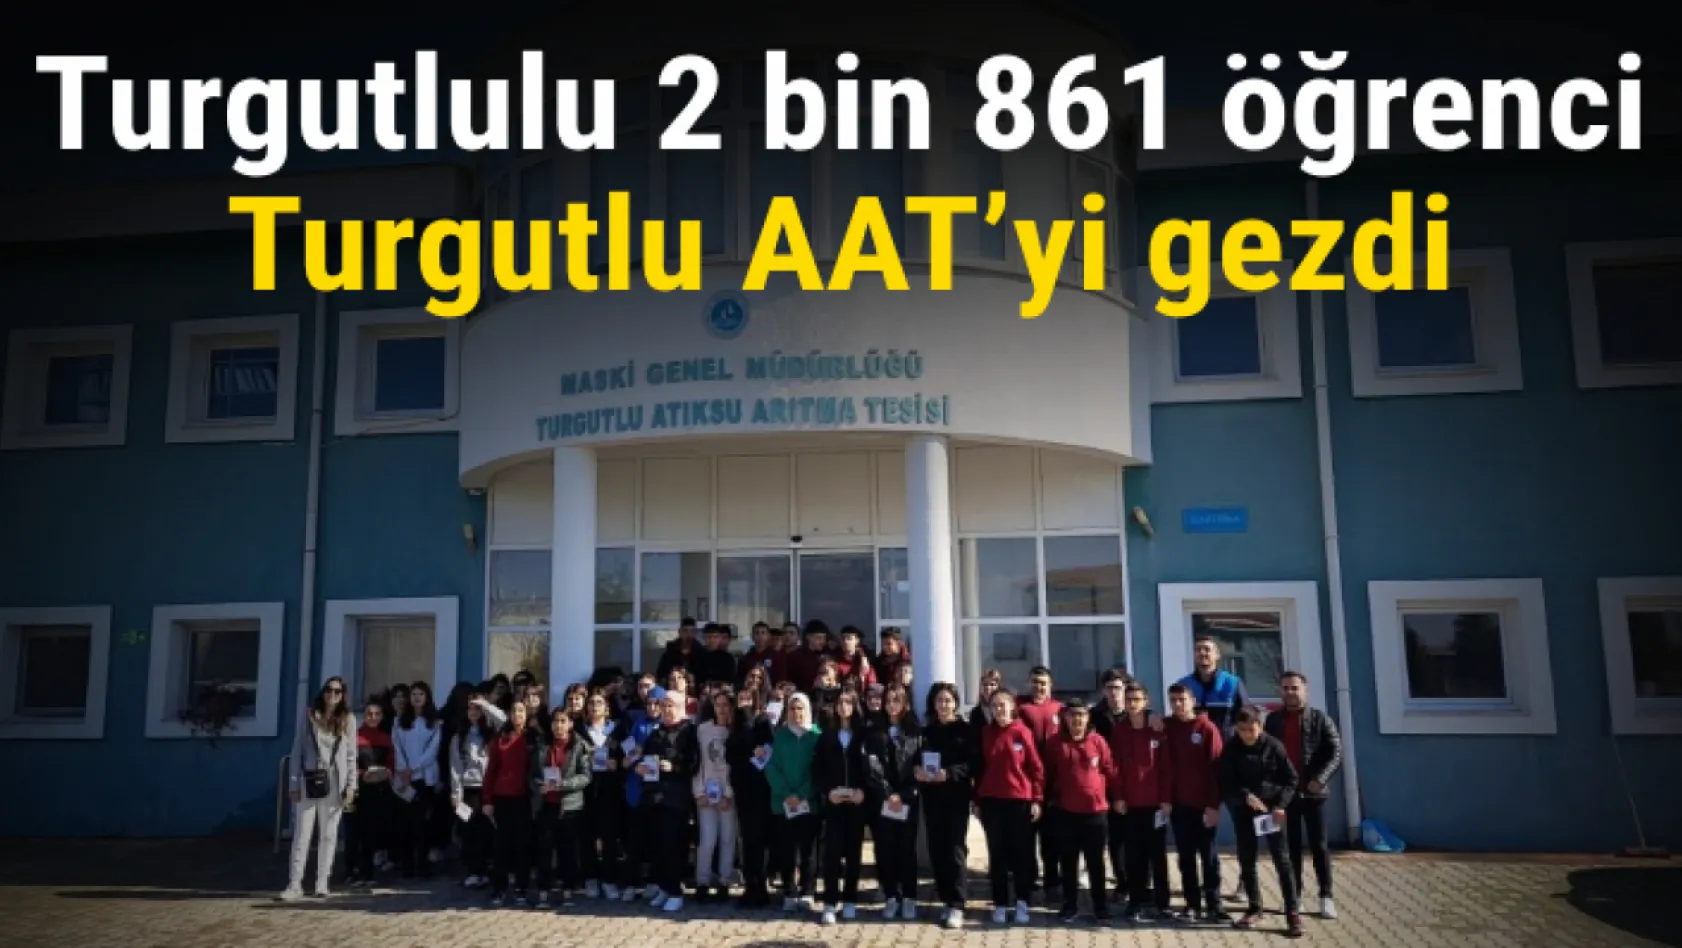 Turgutlulu 2 bin 861 öğrenci Turgutlu AAT'yi gezdi